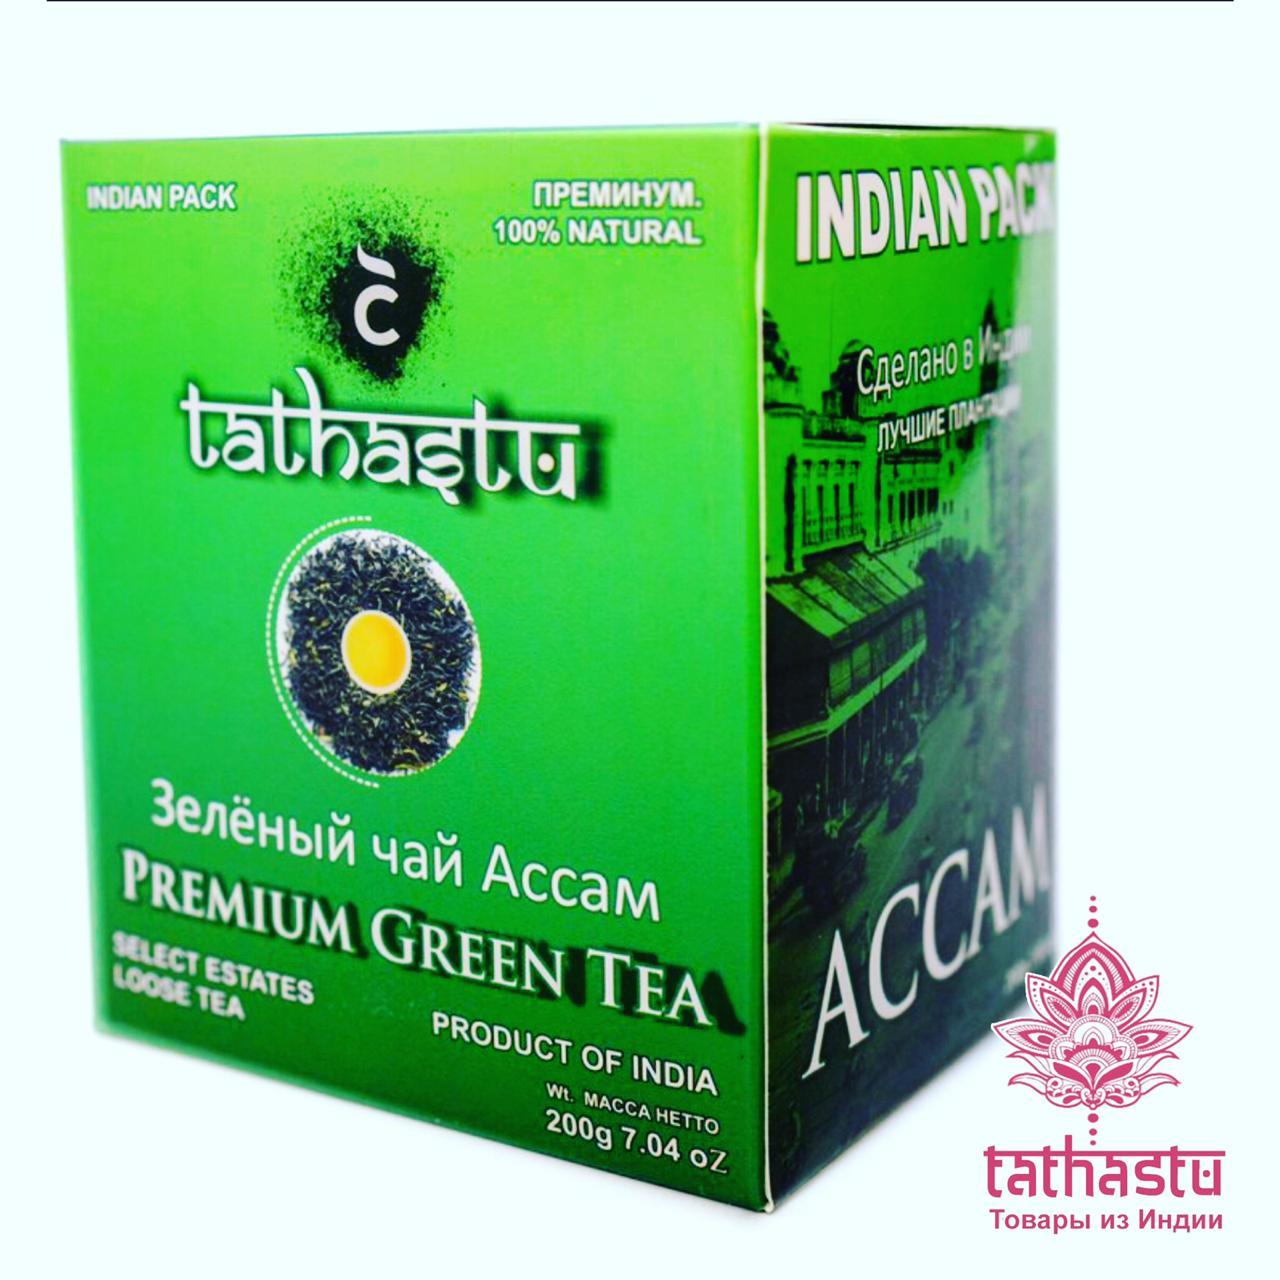 Чай индийский зеленый Ассам Tathastu. Tathastu товары и индии